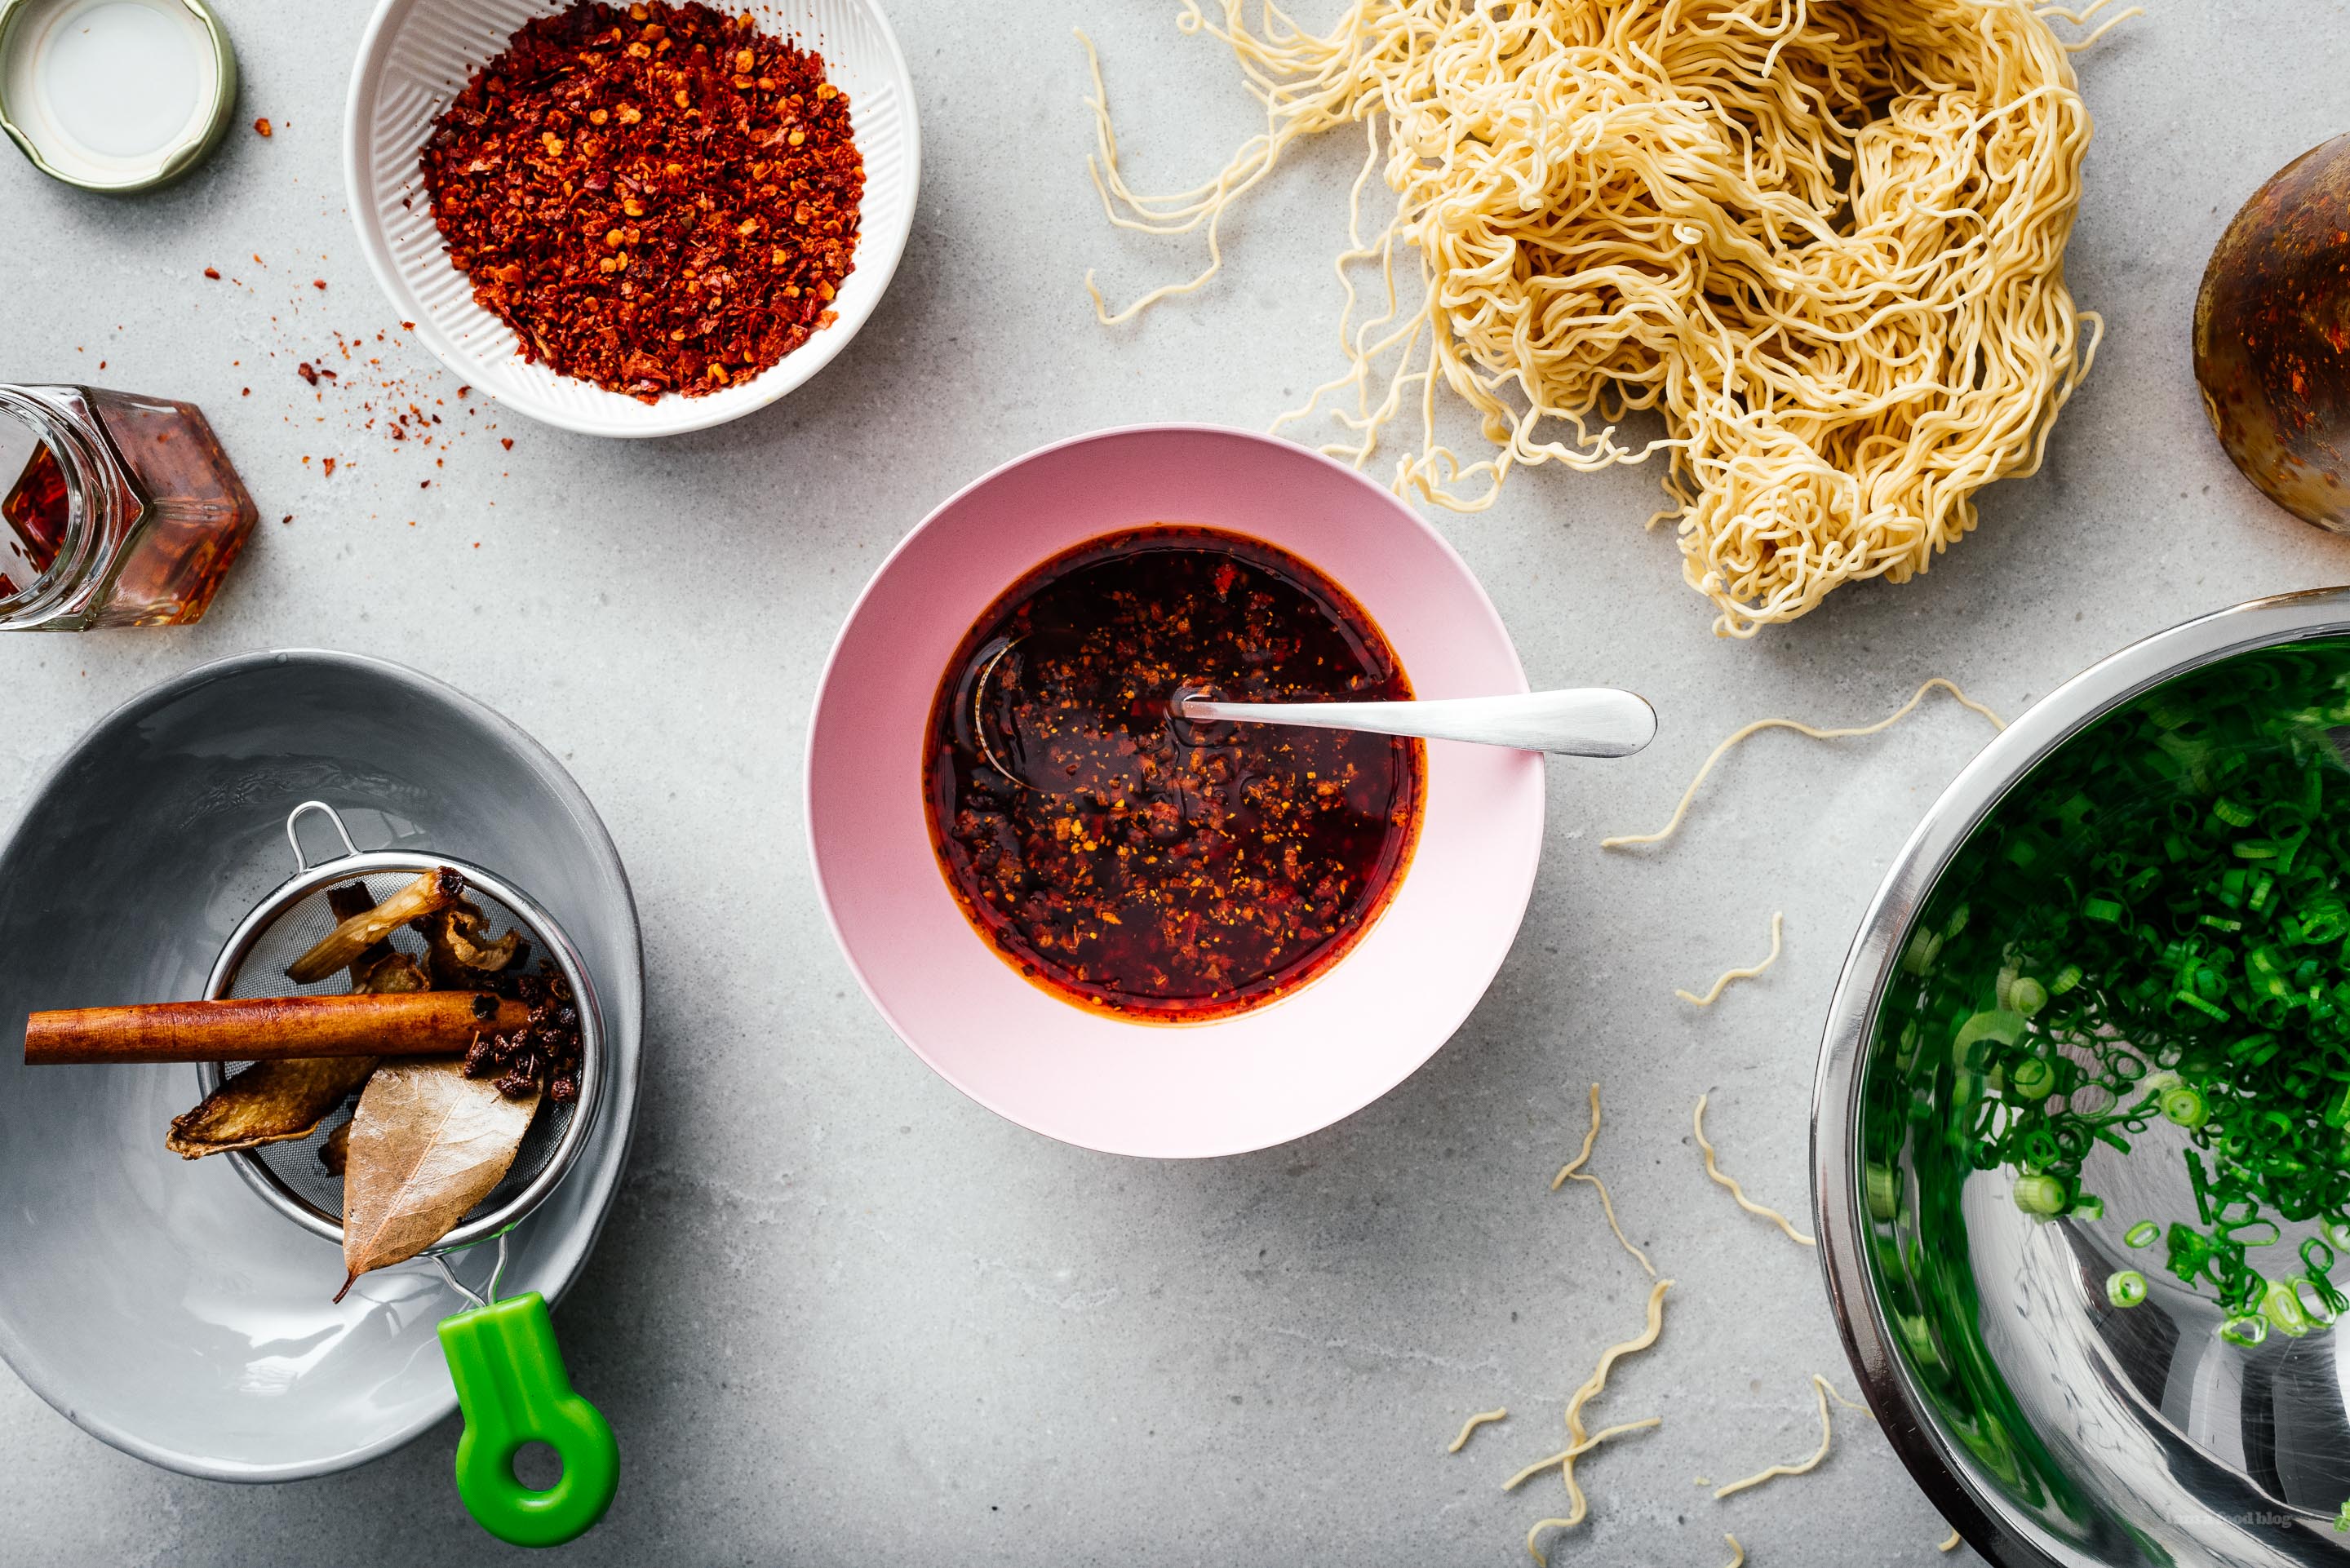 Vous voulez savoir comment faire de l'huile de piment chinoise authentique à la maison ?  Essayez cette recette !  L'huile de piment est incroyable avec du riz, des nouilles, des wontons, des salades.  Utilisez-le comme ingrédient dans des recettes ou comme trempette.  www.iamafoodblog.com #chilioil #chinesechilioil #recipes #easy #homemade #sichuan"